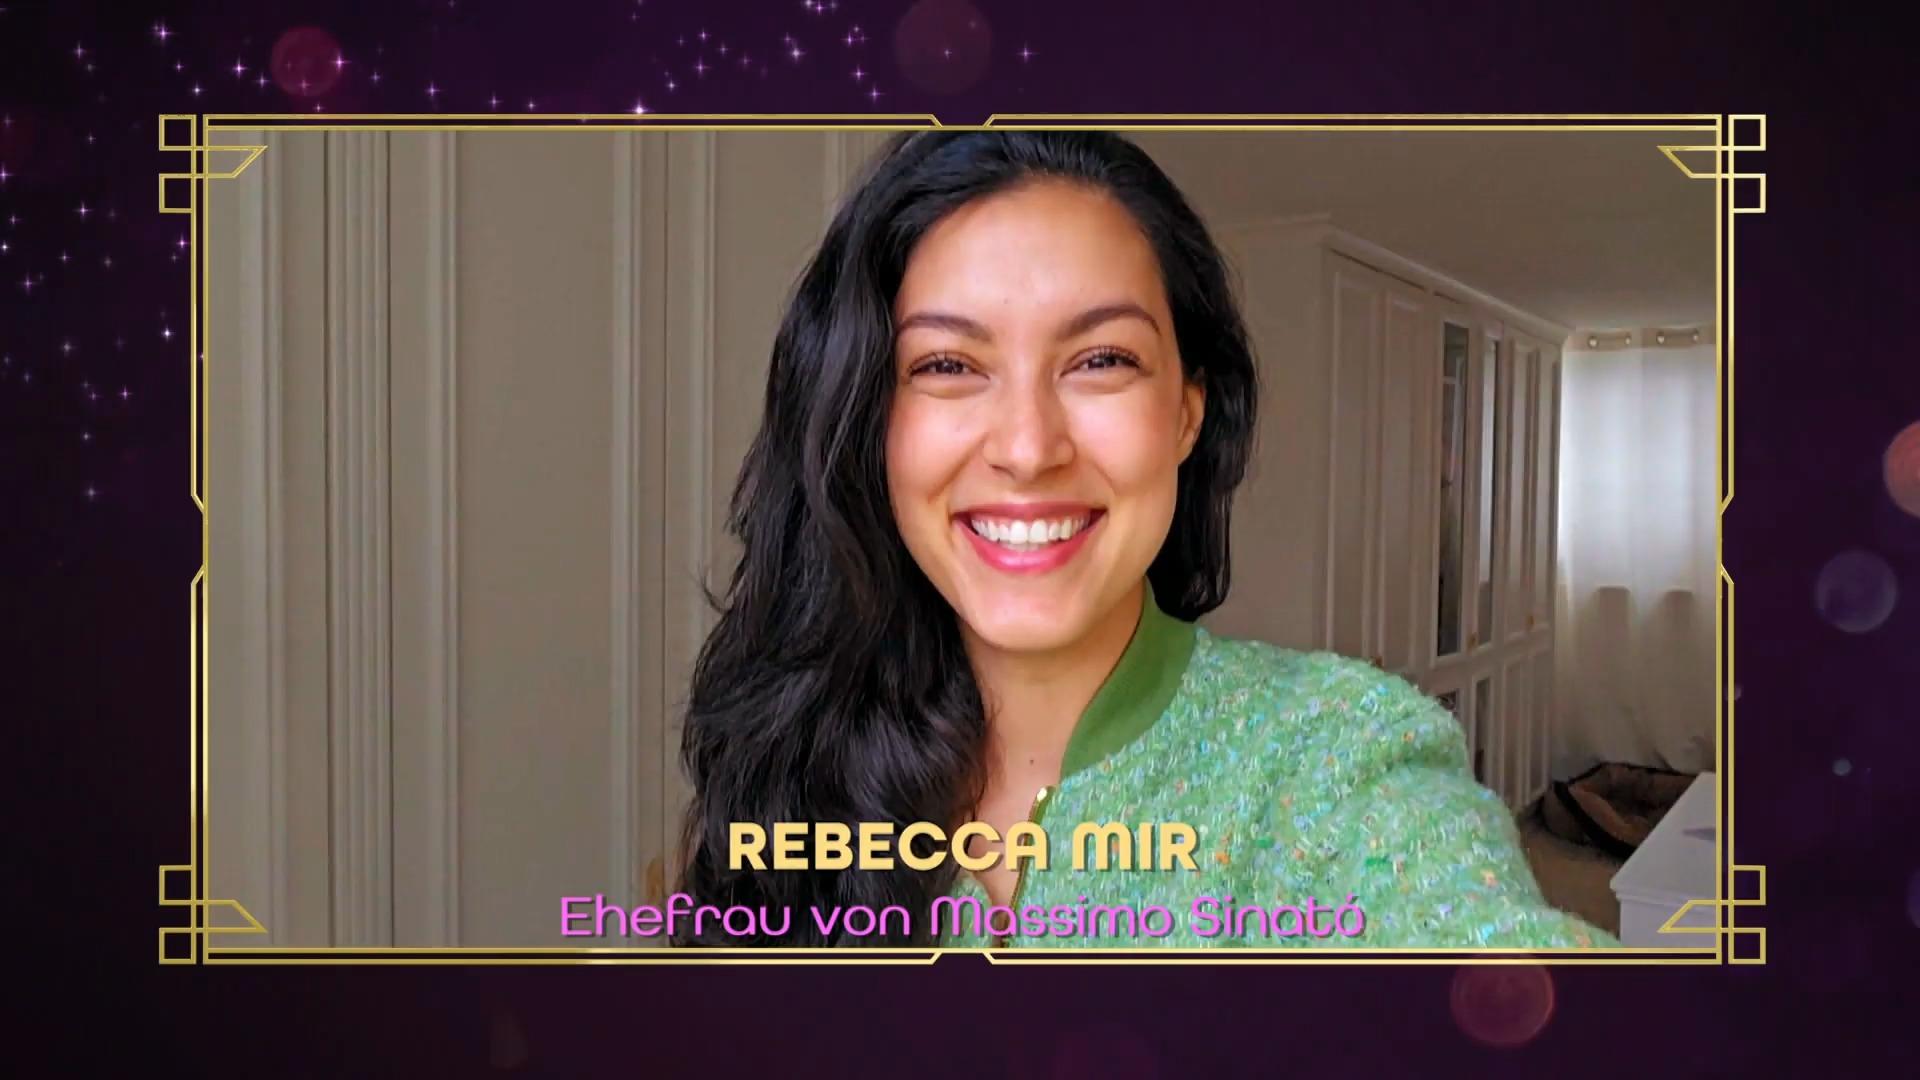 Rebecca Mir ist sichtlich stolz auf ihren Schatz Viva la Diva: Videobotschaft für Massimo